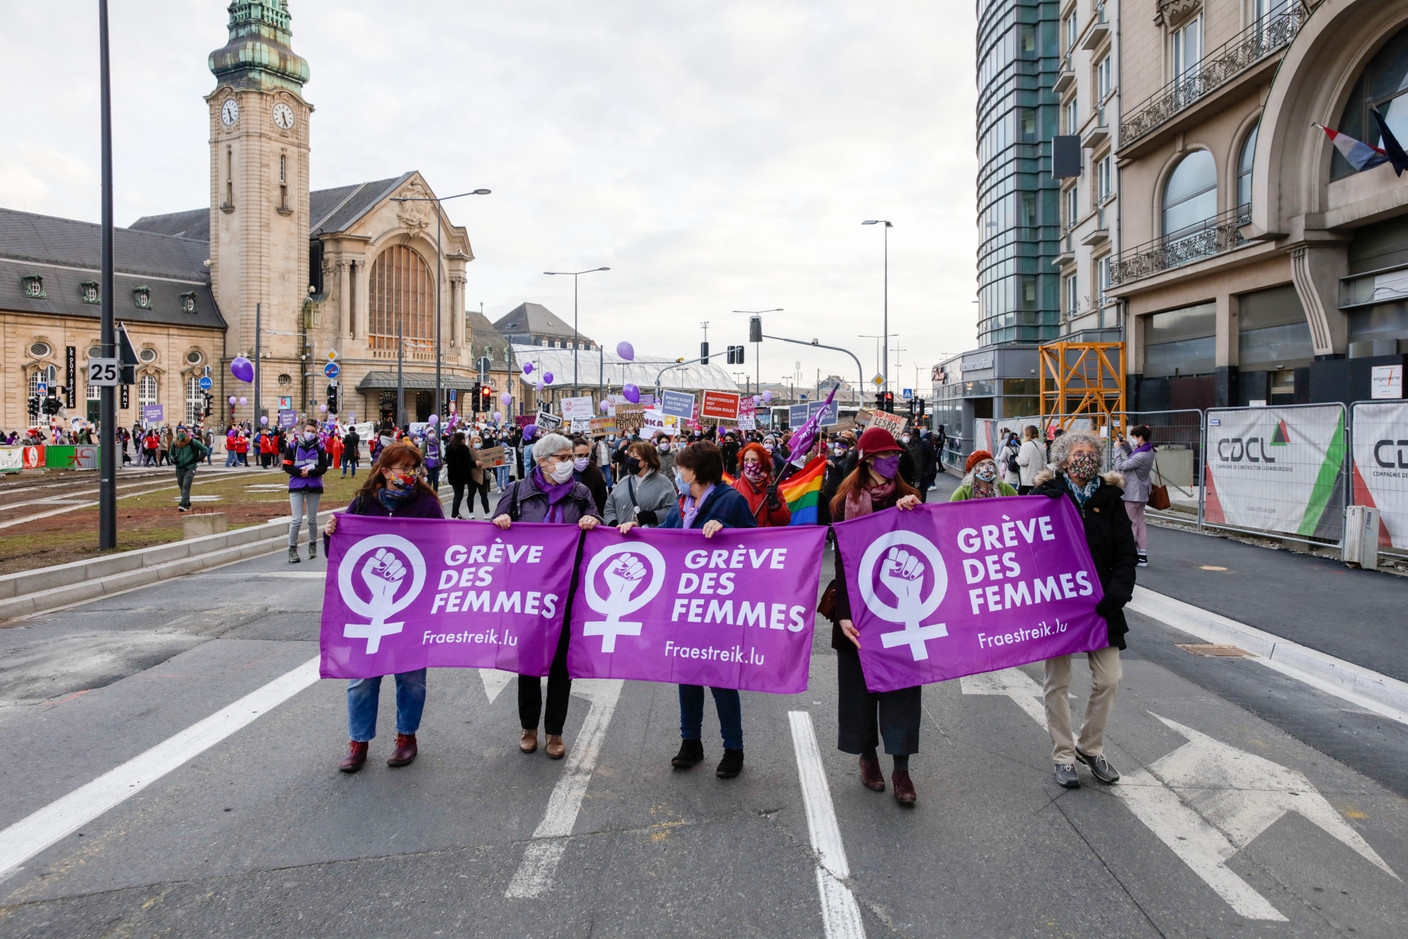 La plateforme JIF (Journée internationale des femmes) est à l’initiative de cette grève des femmes. (Photo: Romain Gamba / Maison Moderne)